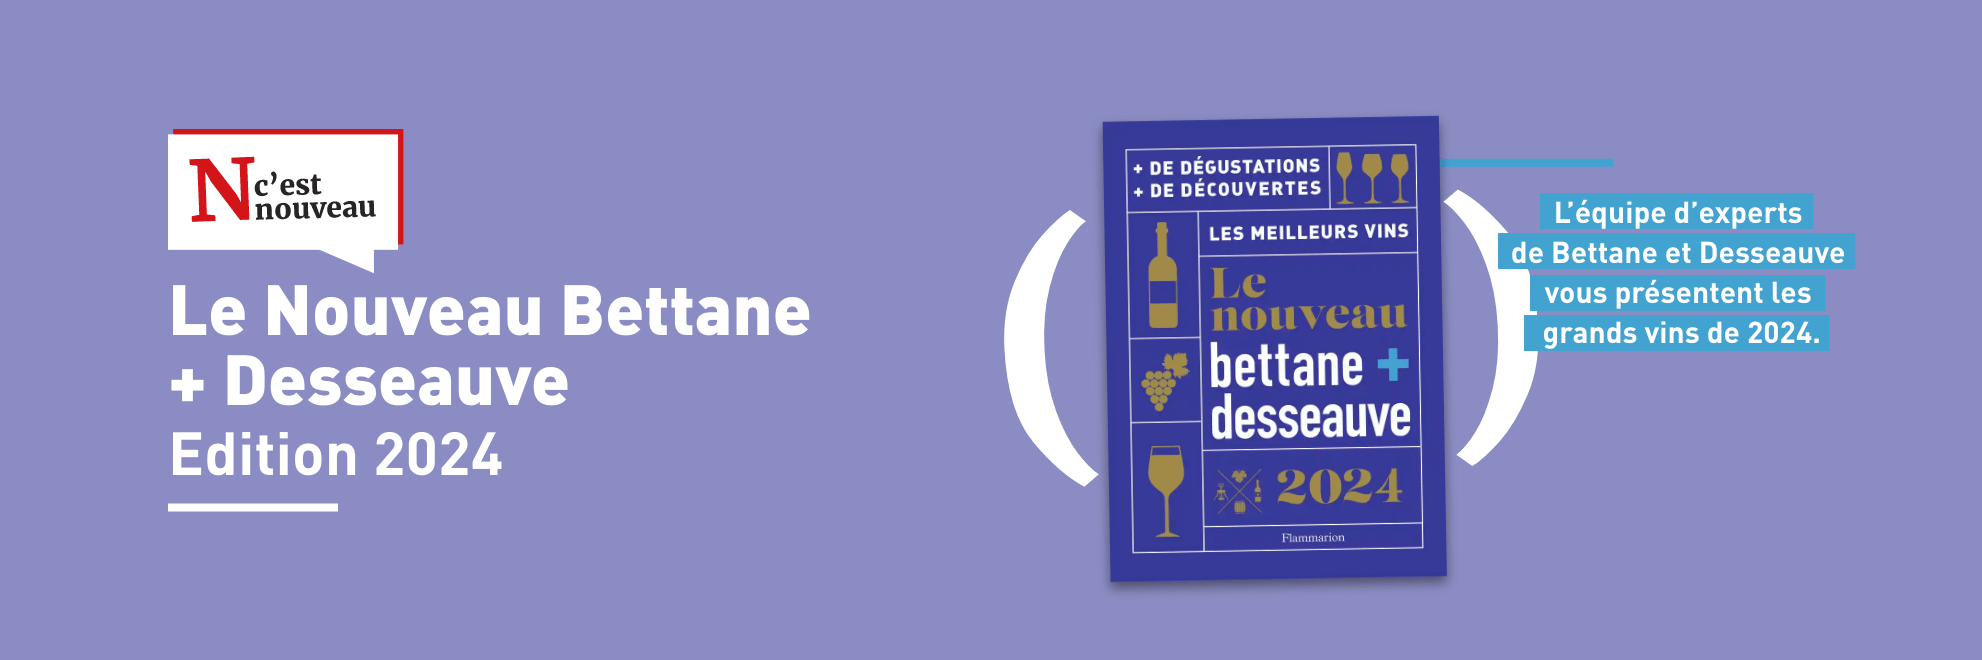 Le Nouveau Bettane et Desseauve. Les meilleurs vins